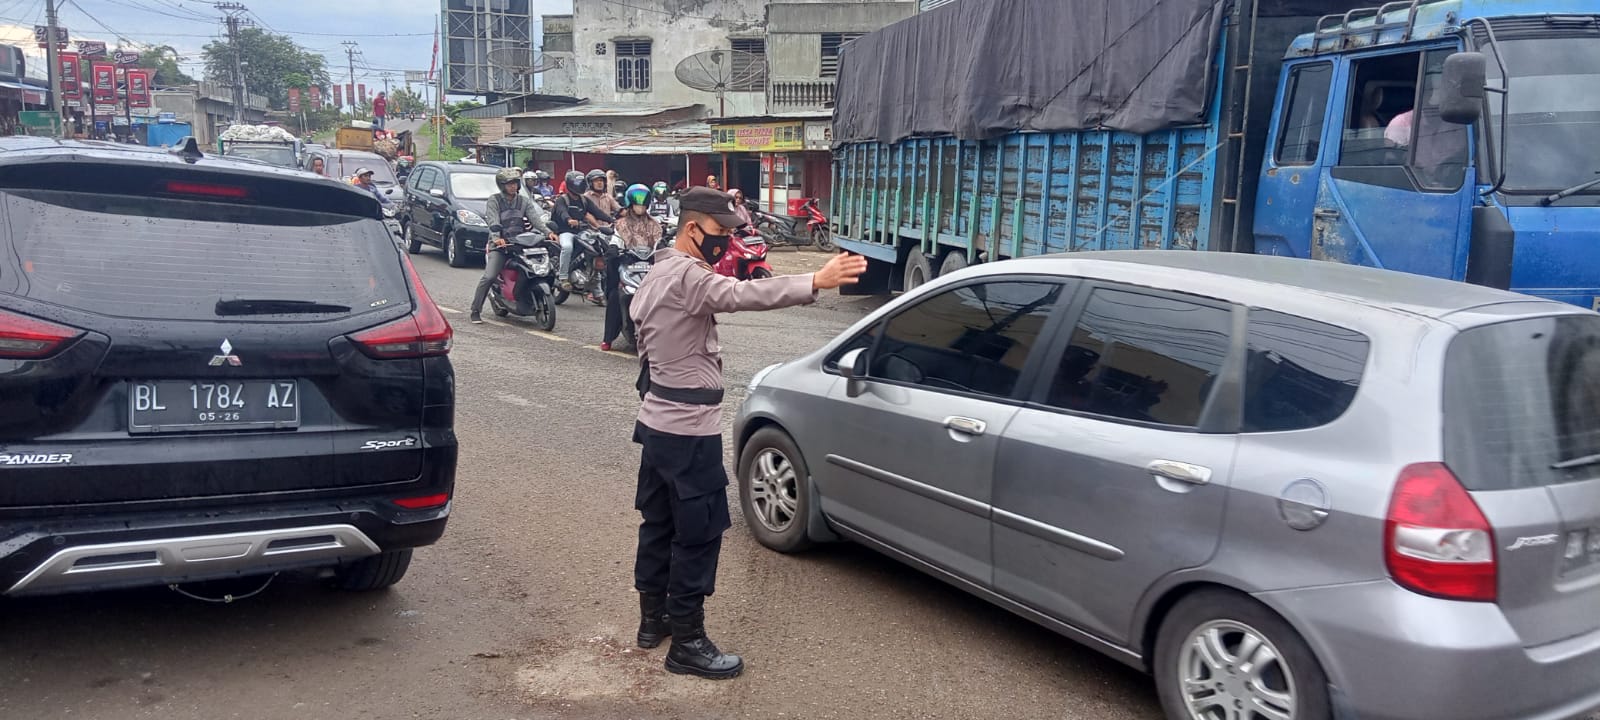 Cegah Macet, Personel Polsek Samudera Strong Poin di Keude Geudong